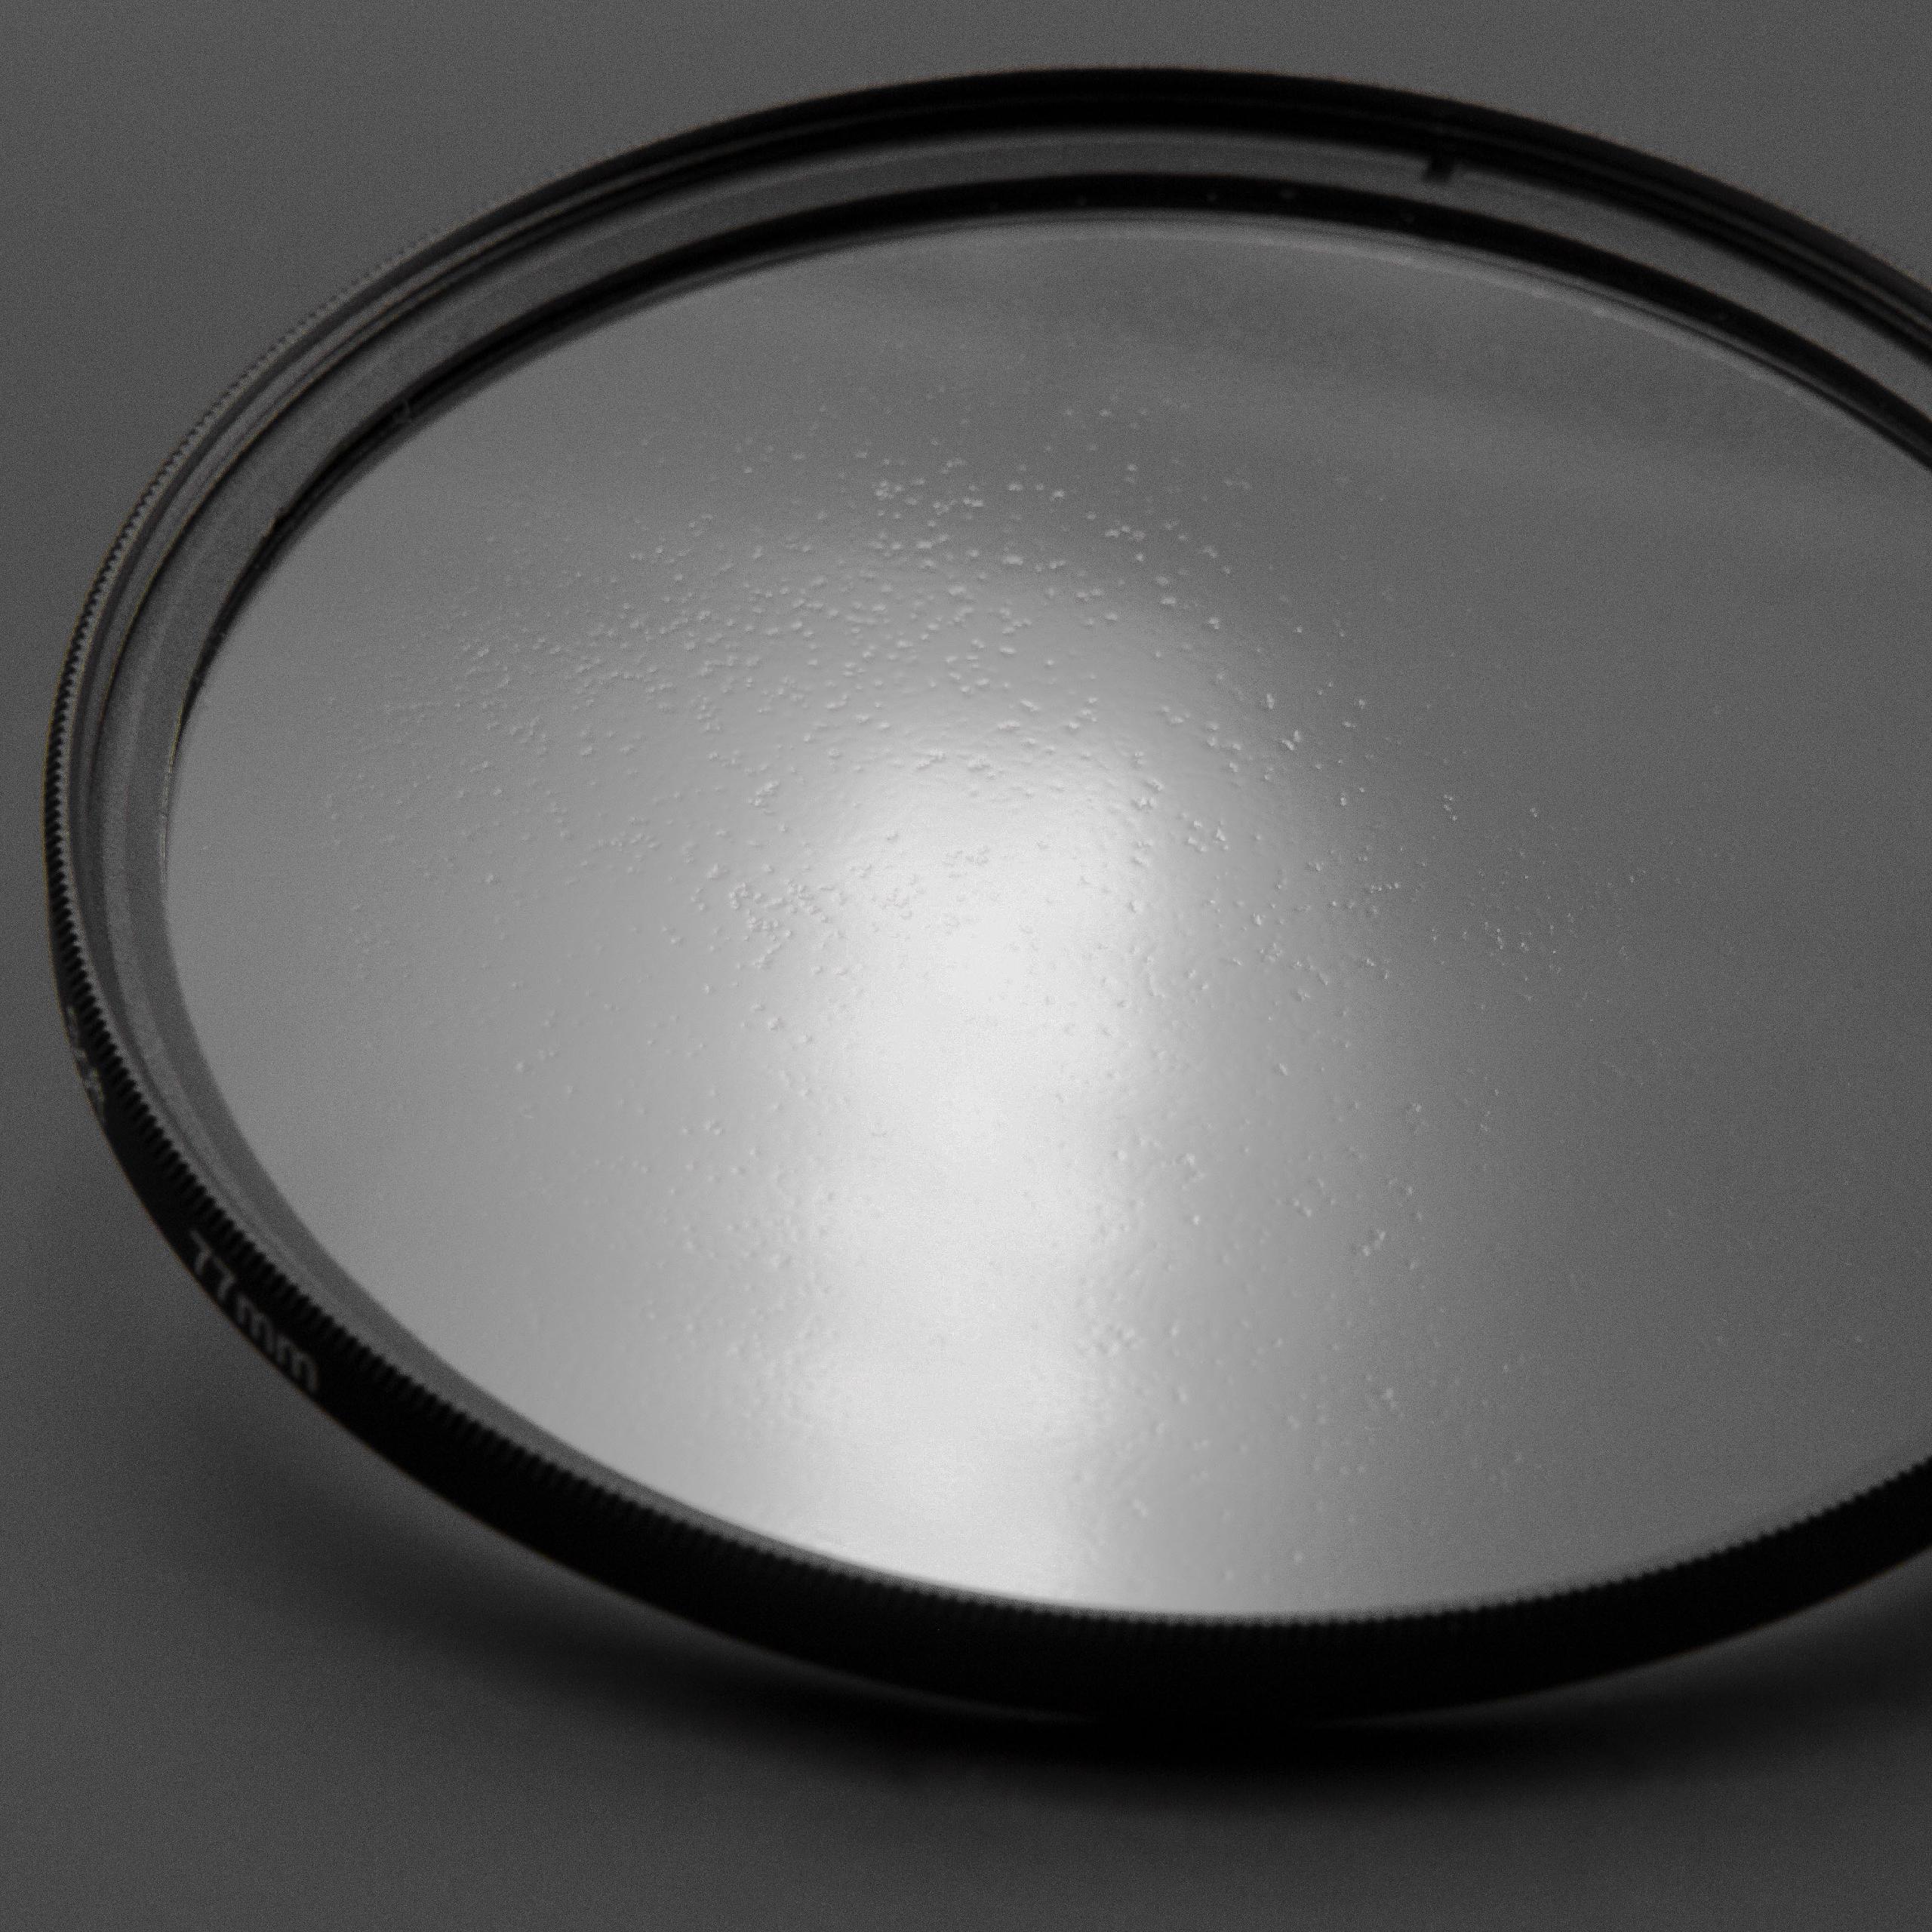 Filtro soft-focus per fotocamere e obiettivi con filettatura da 62 mm 